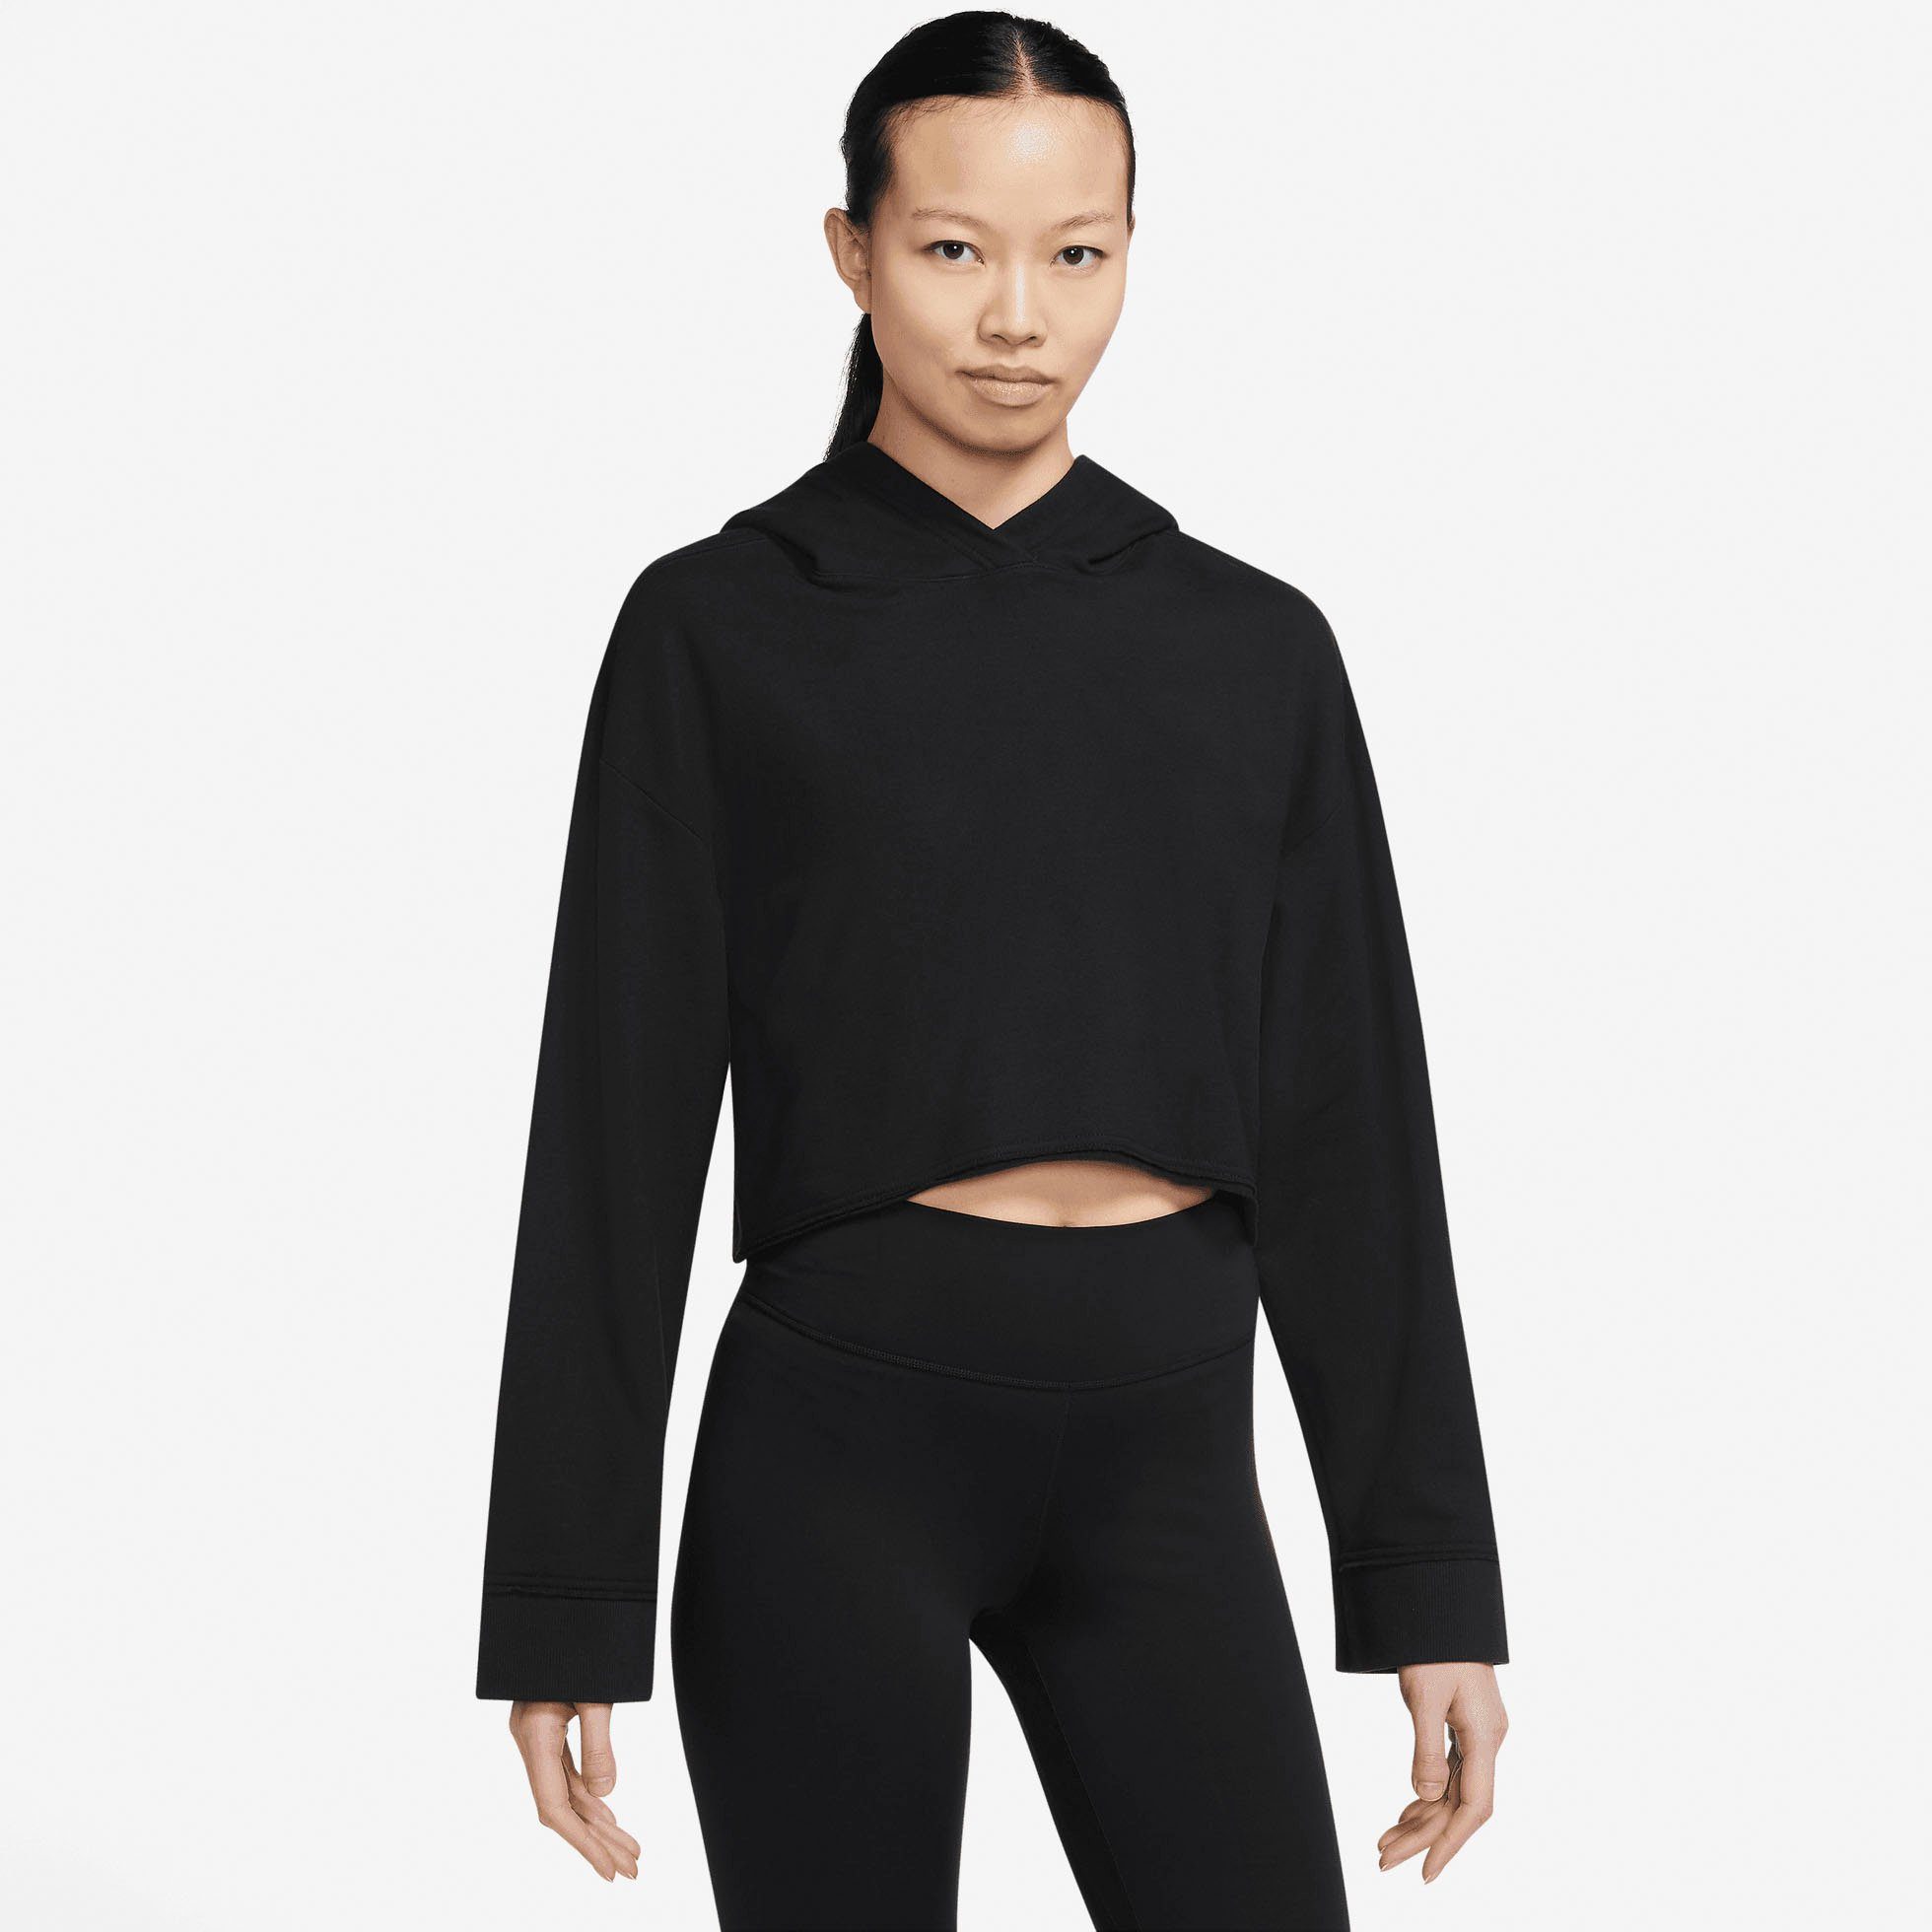 Nike Sweatshirt Yoga Luxe Women's Cropped Fleece Hoodie